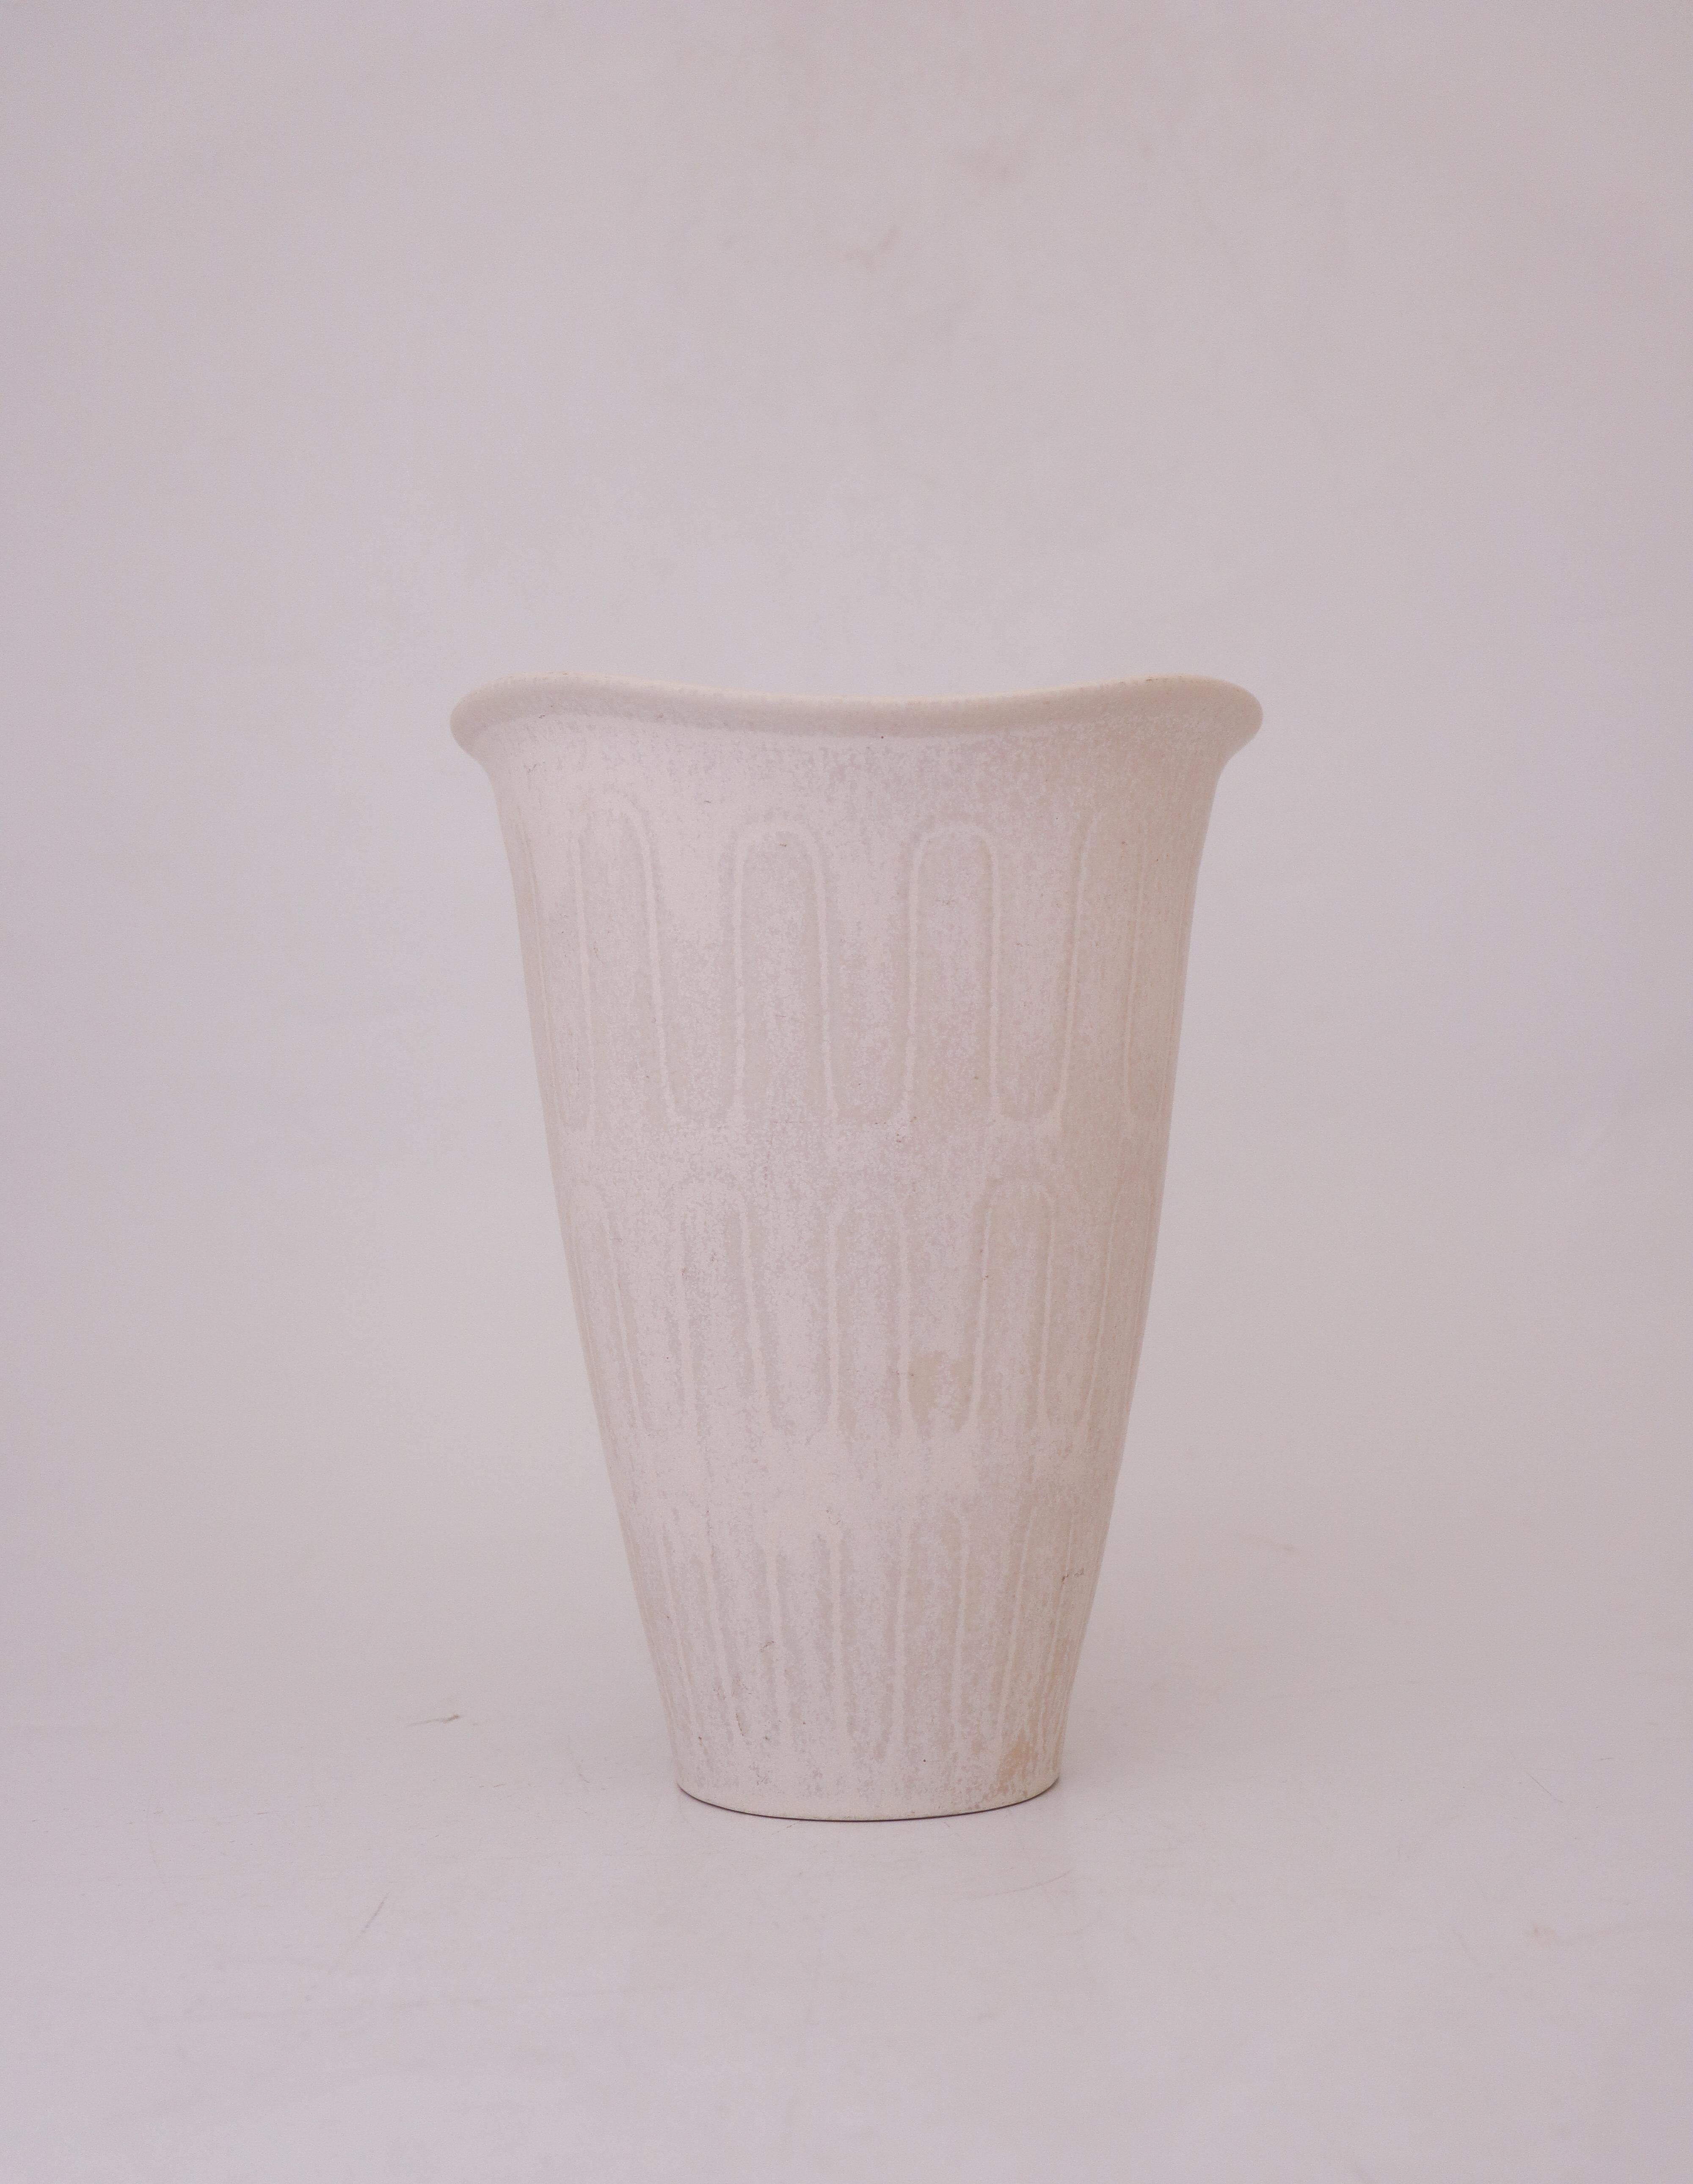 Eine schöne weiße Vase, entworfen von Gunnar Nylund bei Rörstrand, die Vase ist 23,5 cm (9,4